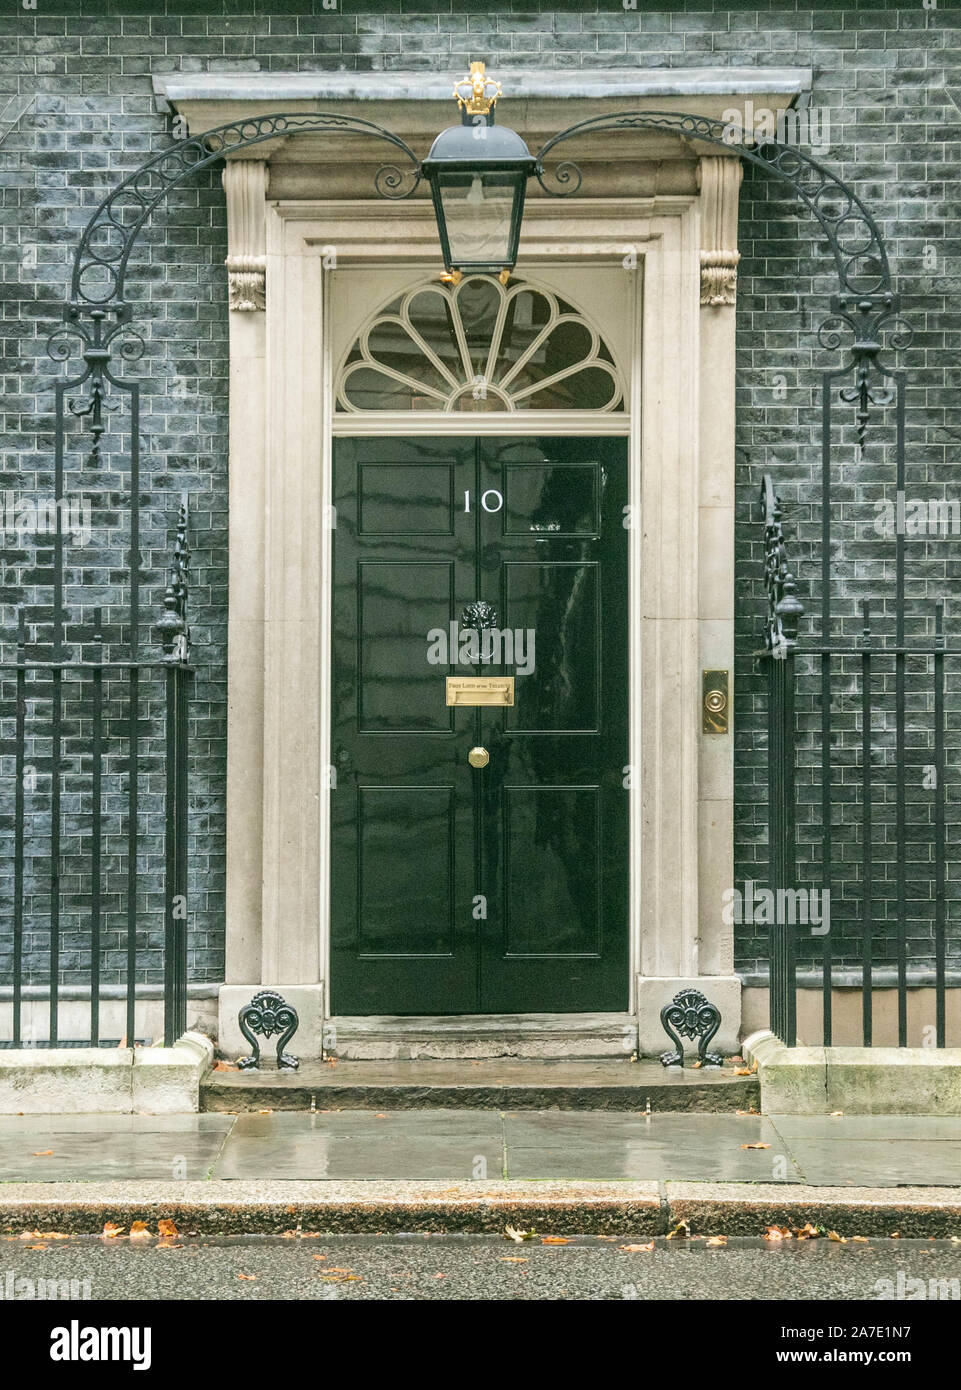 Il 1 novembre 2019, London, Regno Unito: la parte anteriore della porta d'ingresso del 10 Downing Street la residenza ufficiale del Primo Ministro e la sede del governo britannico. (Credito Immagine: © Amer Ghazzal/SOPA immagini via ZUMA filo) Foto Stock